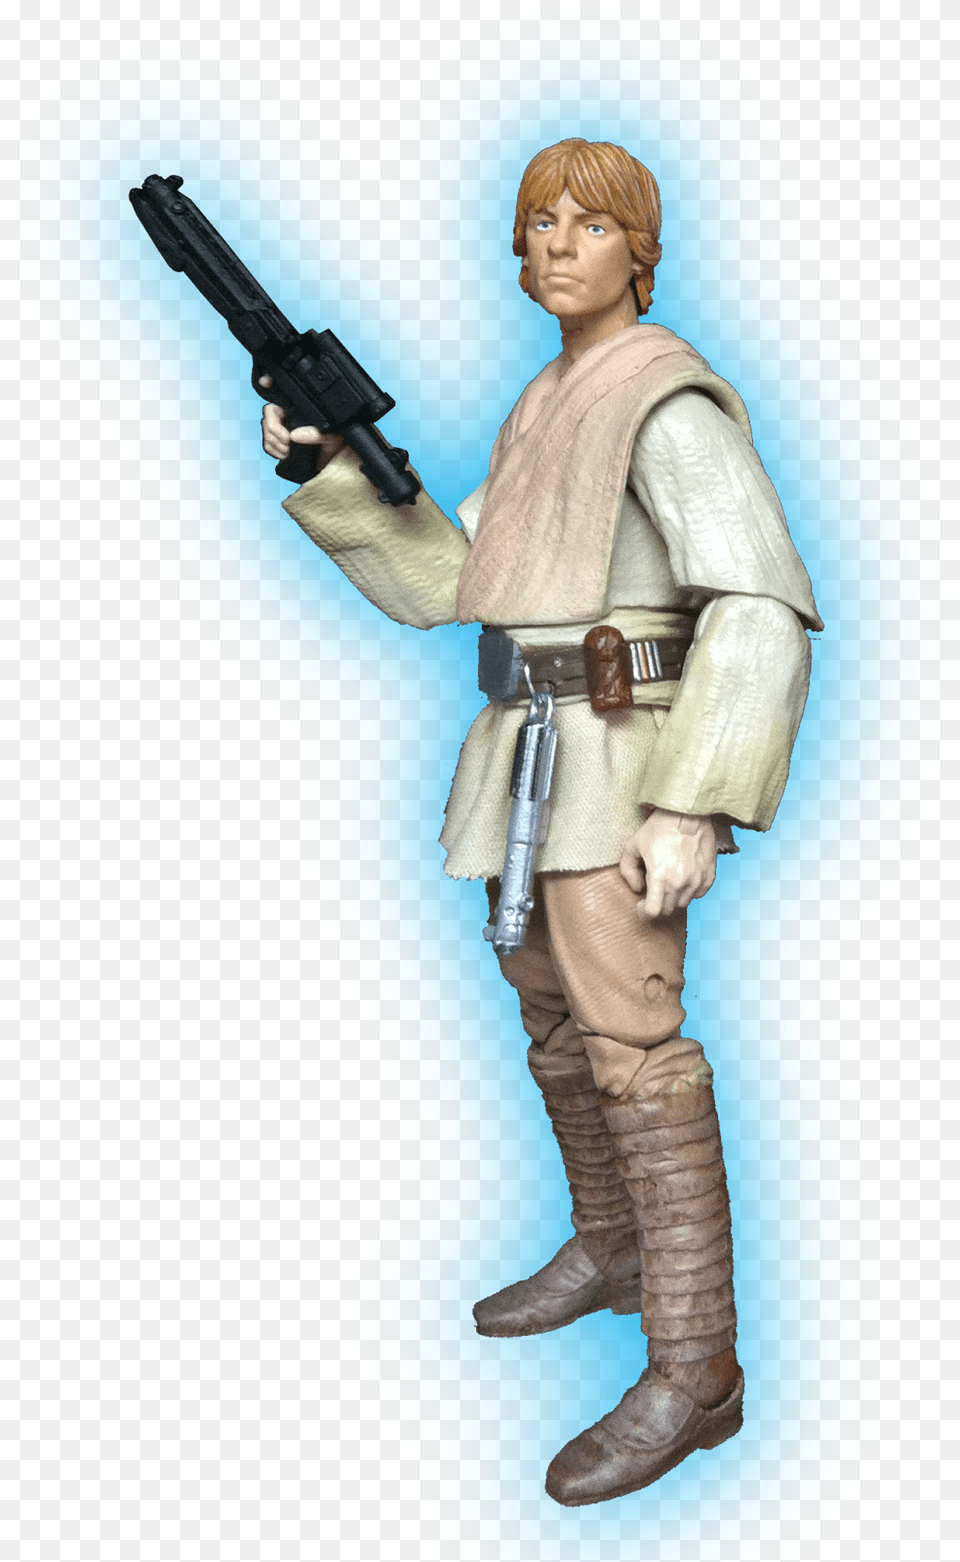 Luke Skywalker Obi Wan Kenobi Anakin Skywalker Chewbacca Custom 6 Inch Black Series Figure, Weapon, Handgun, Gun, Firearm Free Png